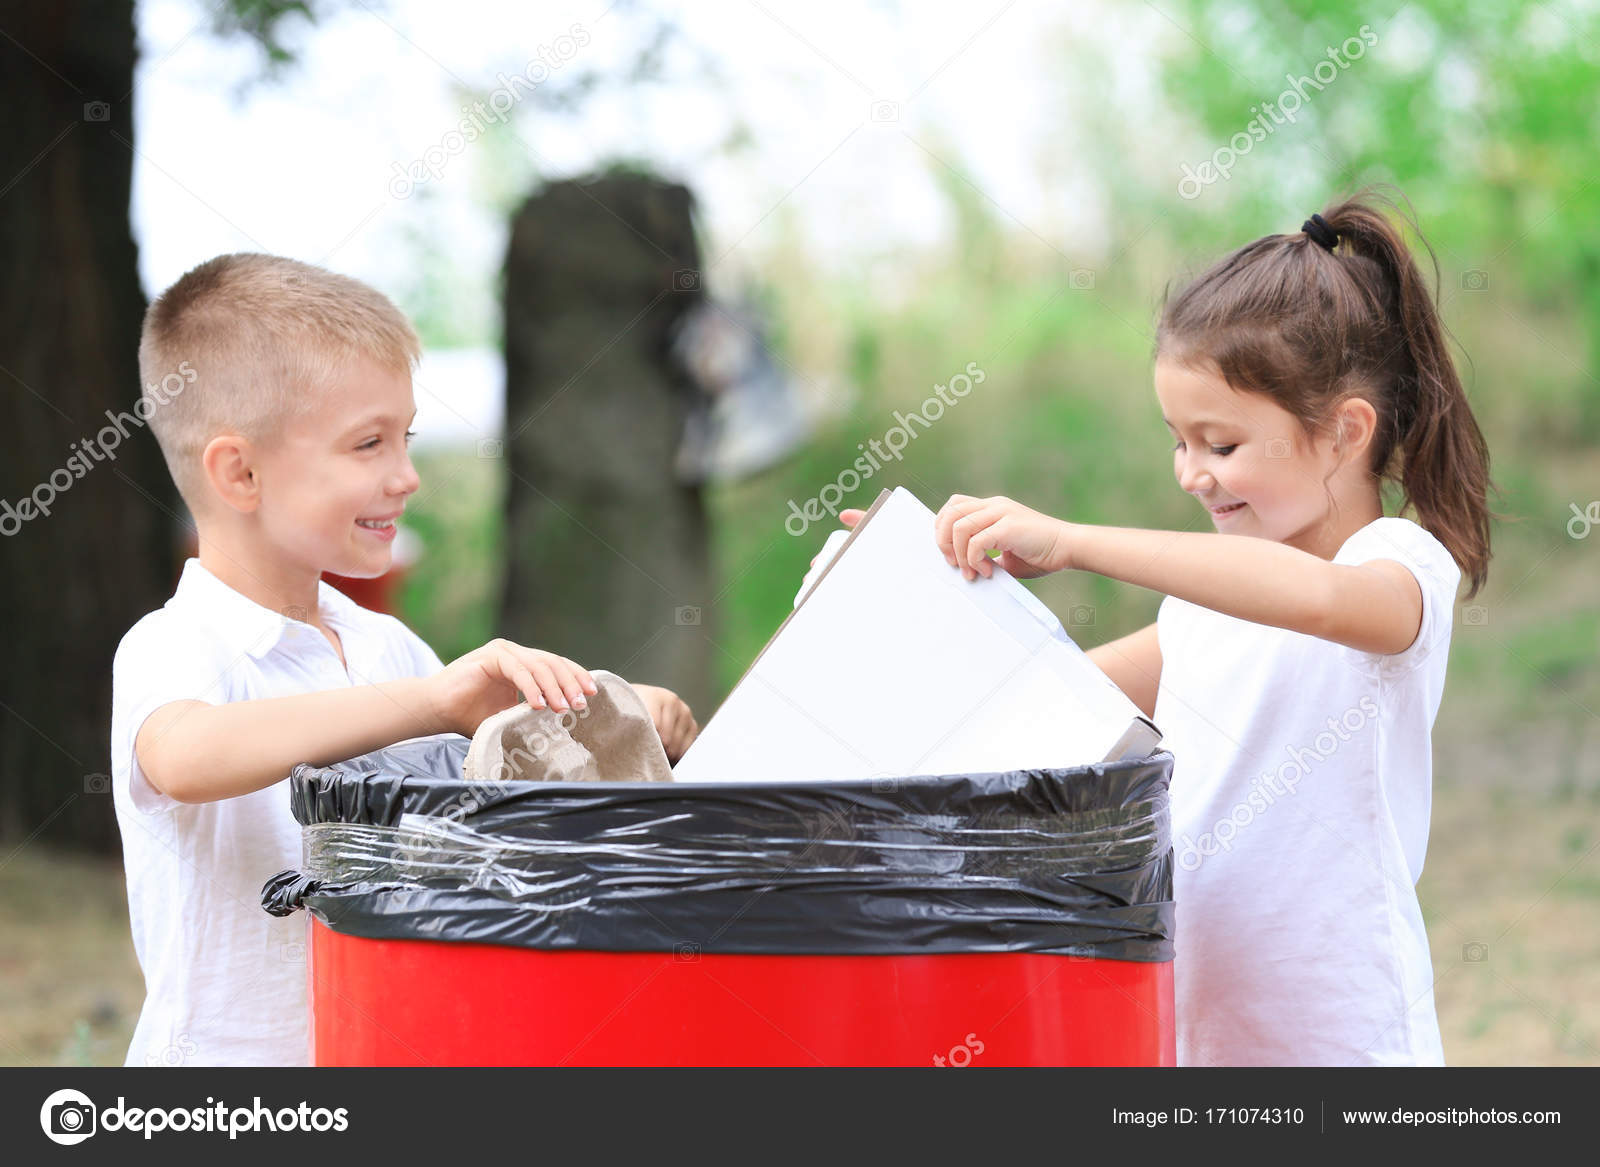 Kleine Kinder werfen Müll in Mülleimer im Freien - Stockfotografie